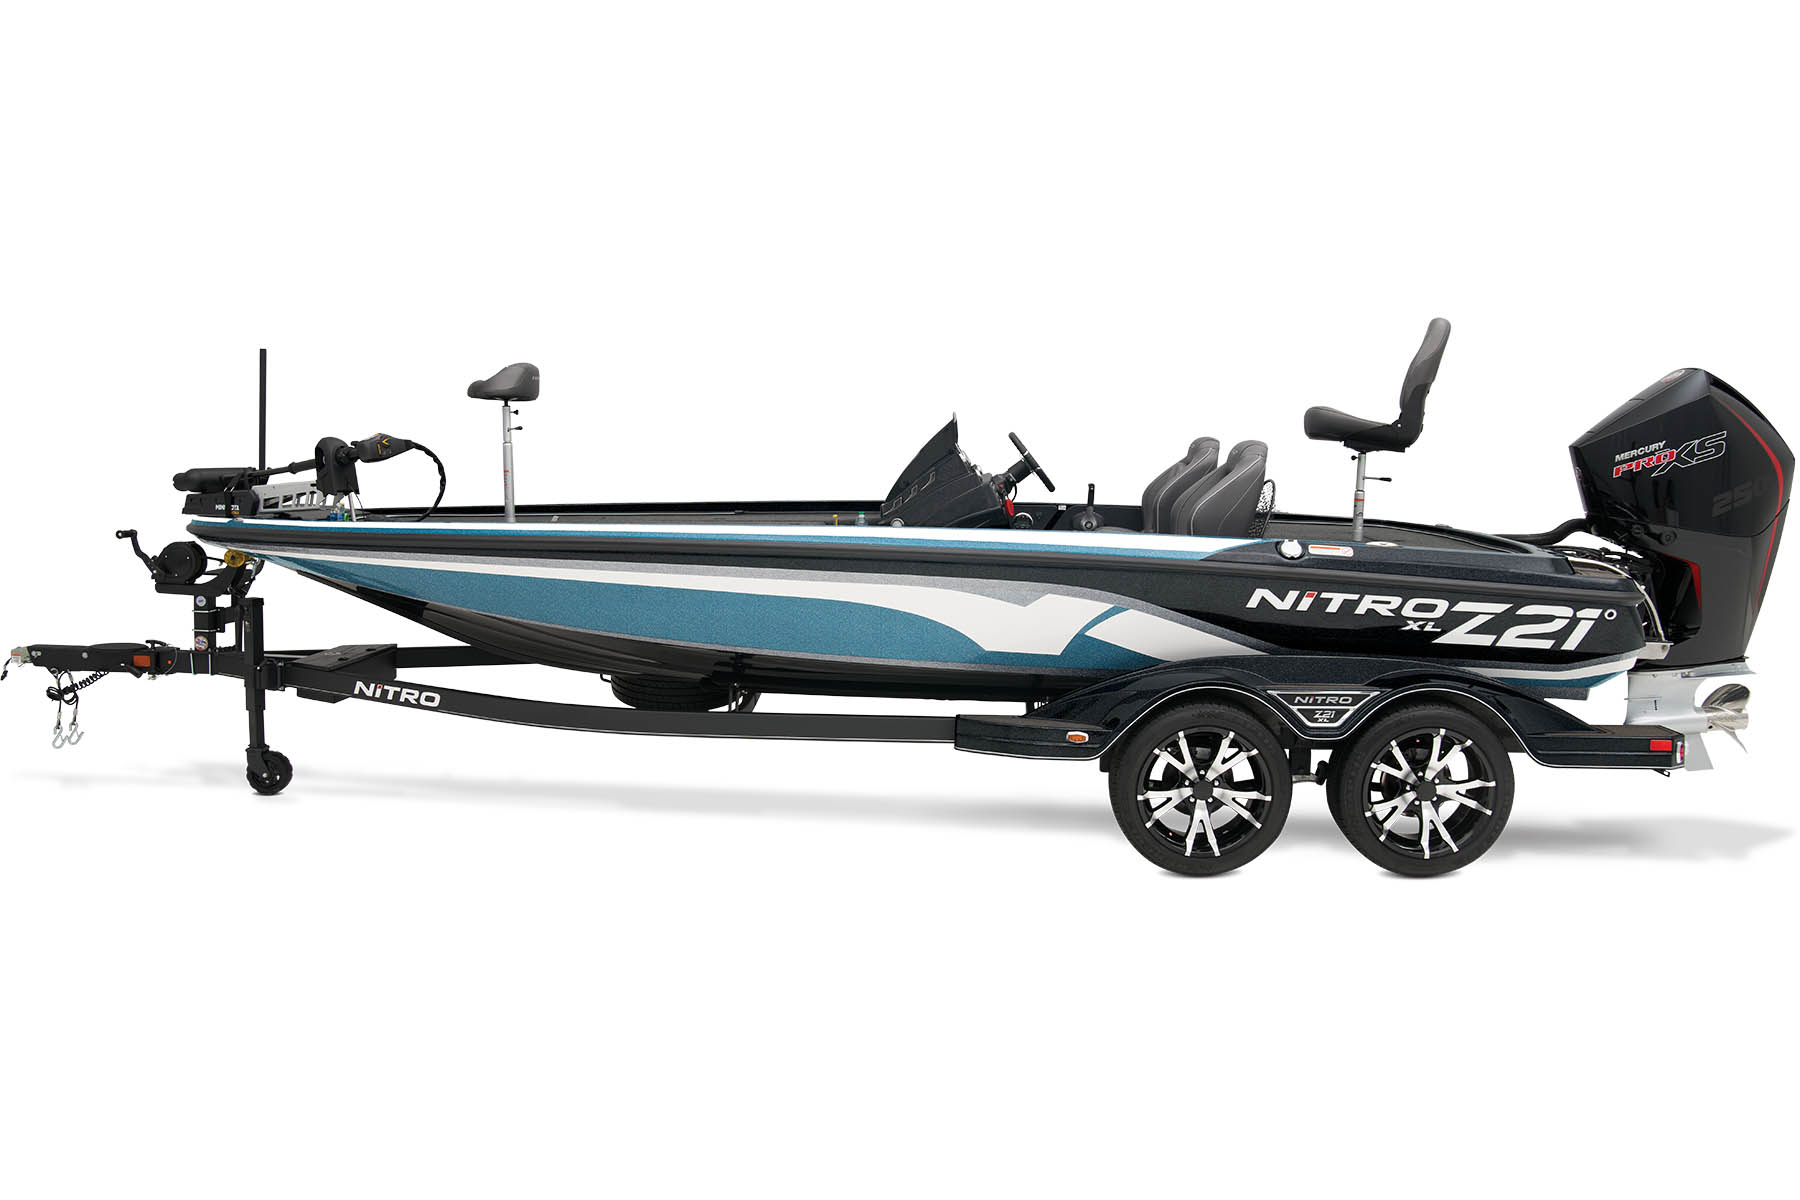 the new nitro z21 bass boat